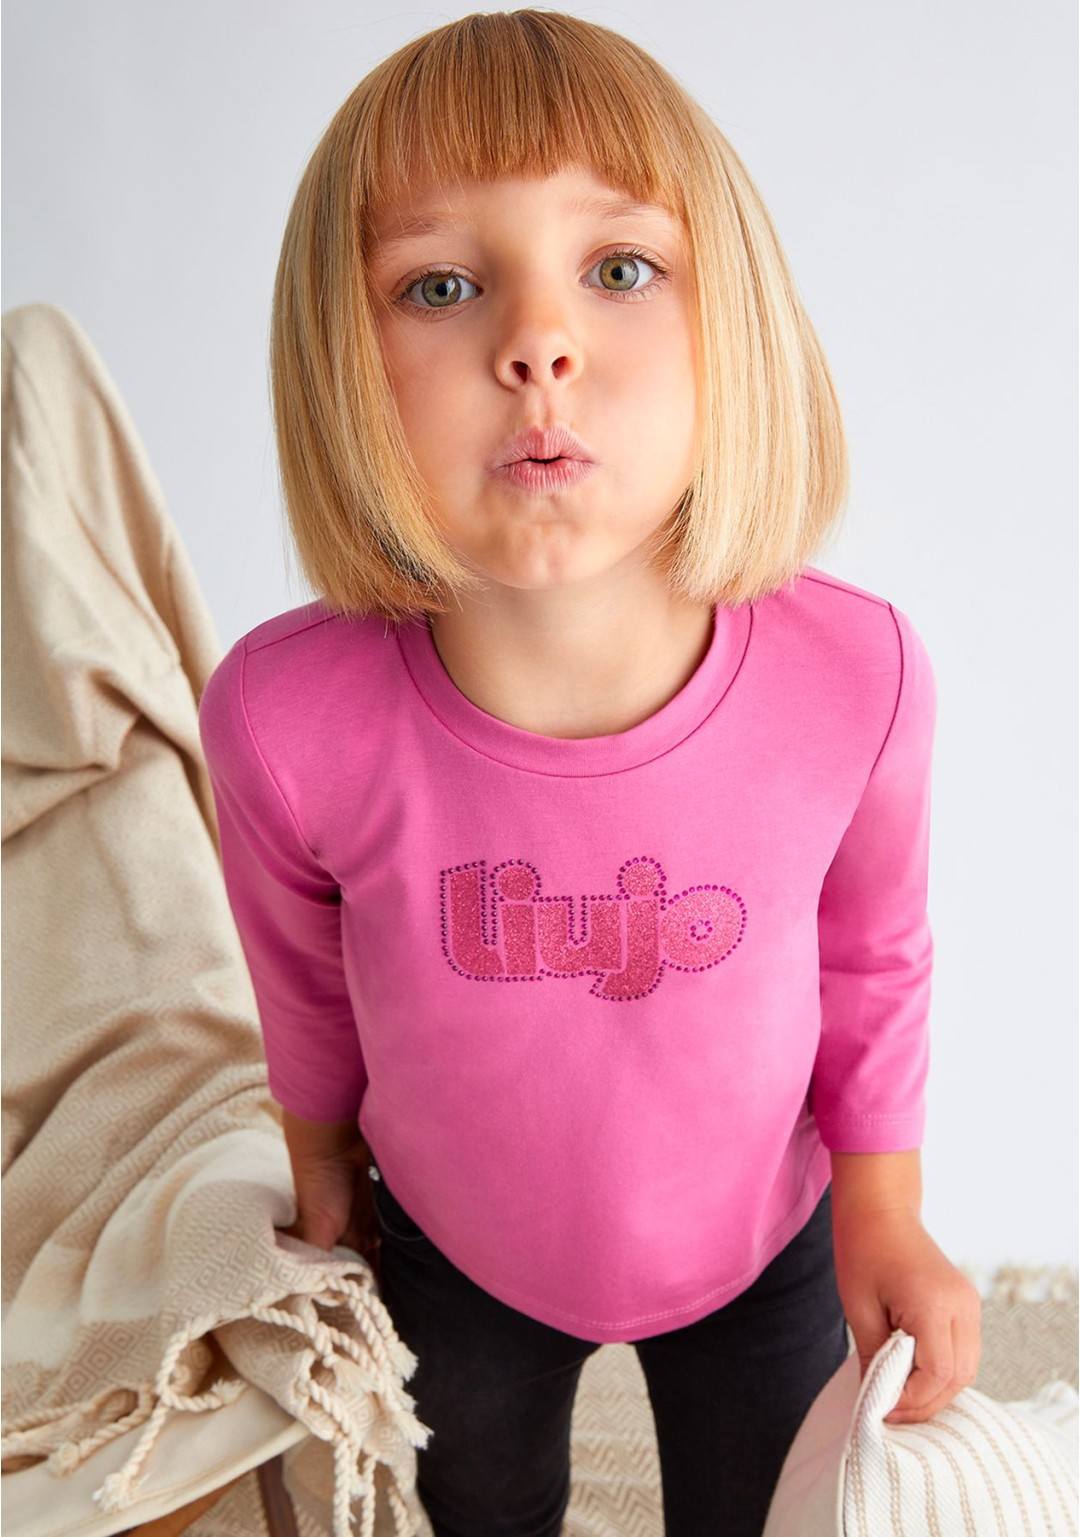 LIU JO - T-Shirt Logo - Bambine e ragazze - KF3048 J088 F